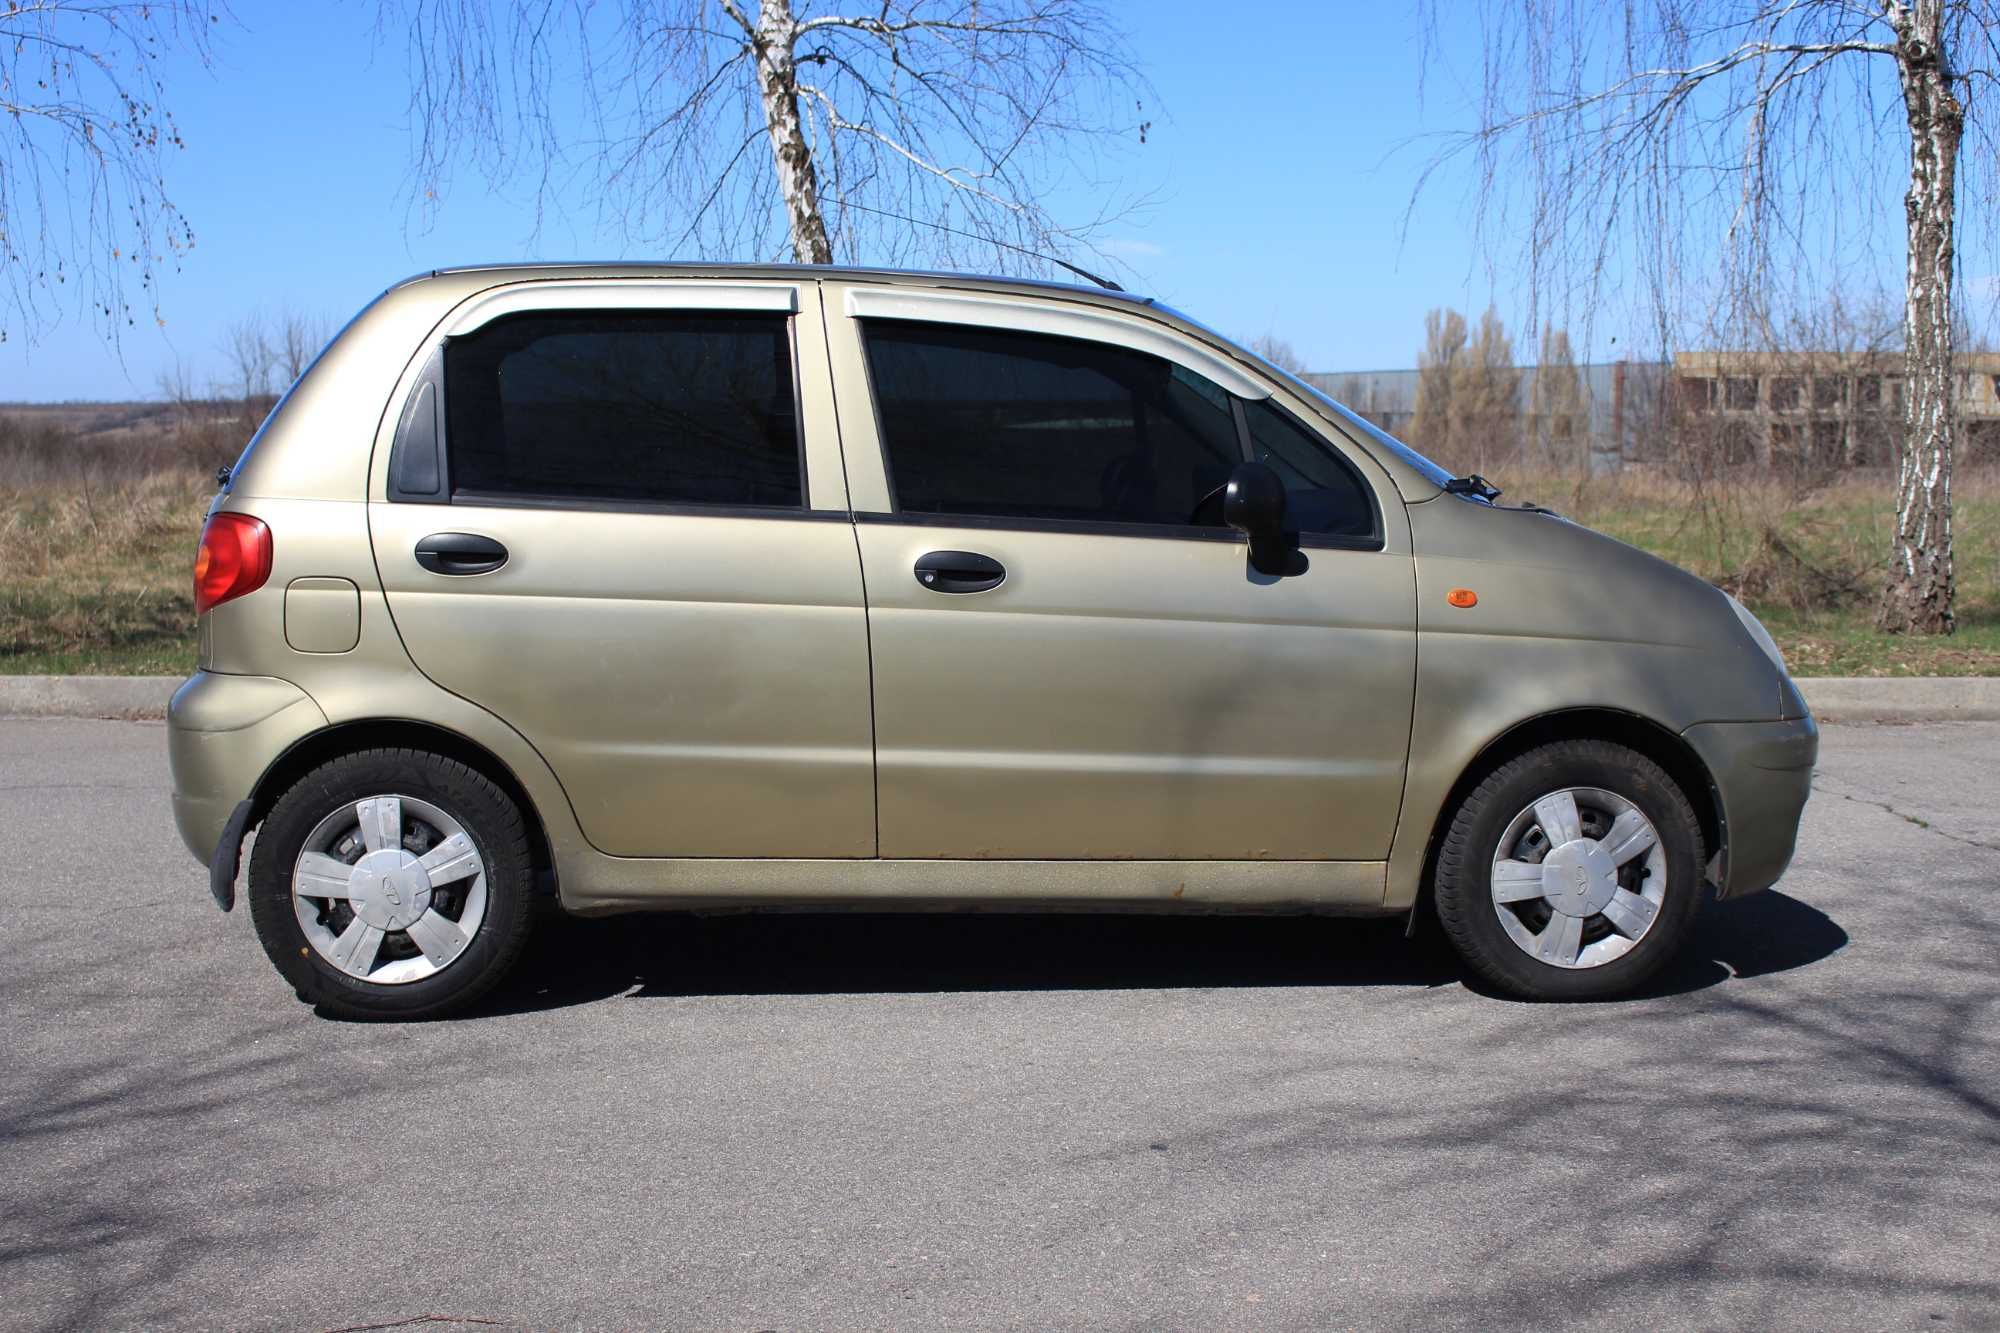 Продам Daewoo Matiz 2006г 0.8 бензин